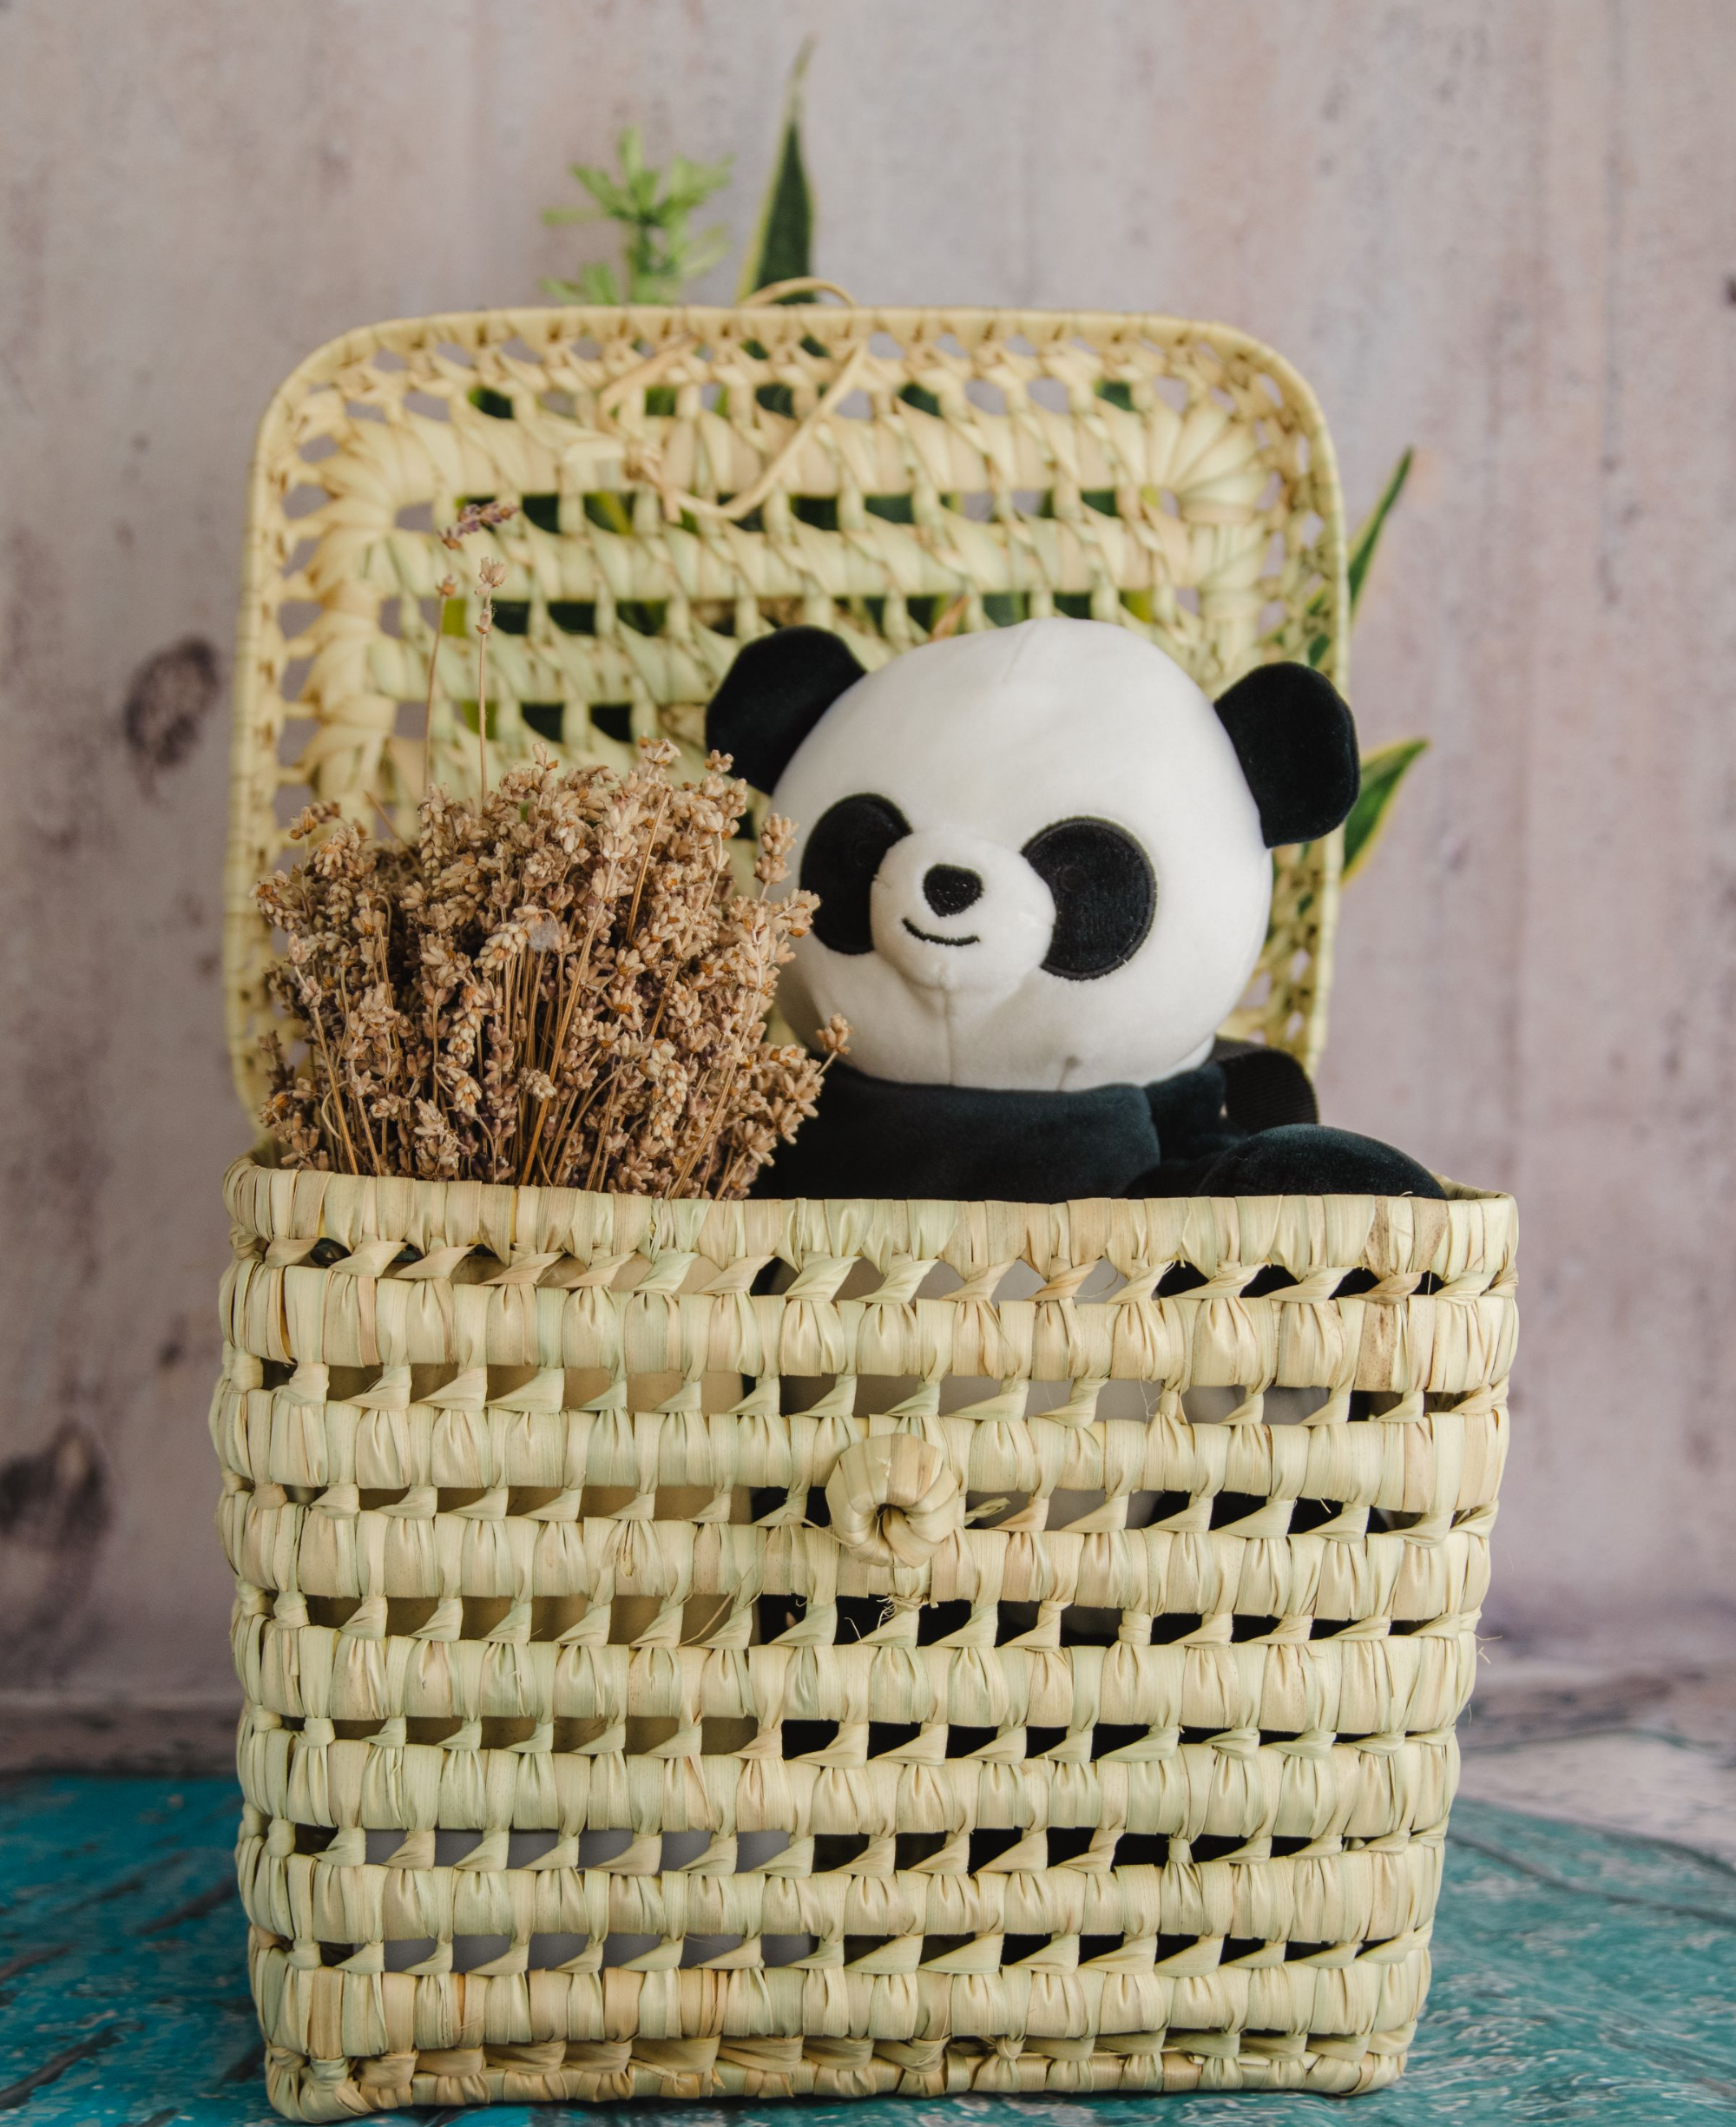 Wicker Storage Baskets - Palm Leaf Storage Chests - Handmade Rattan Basket Storage